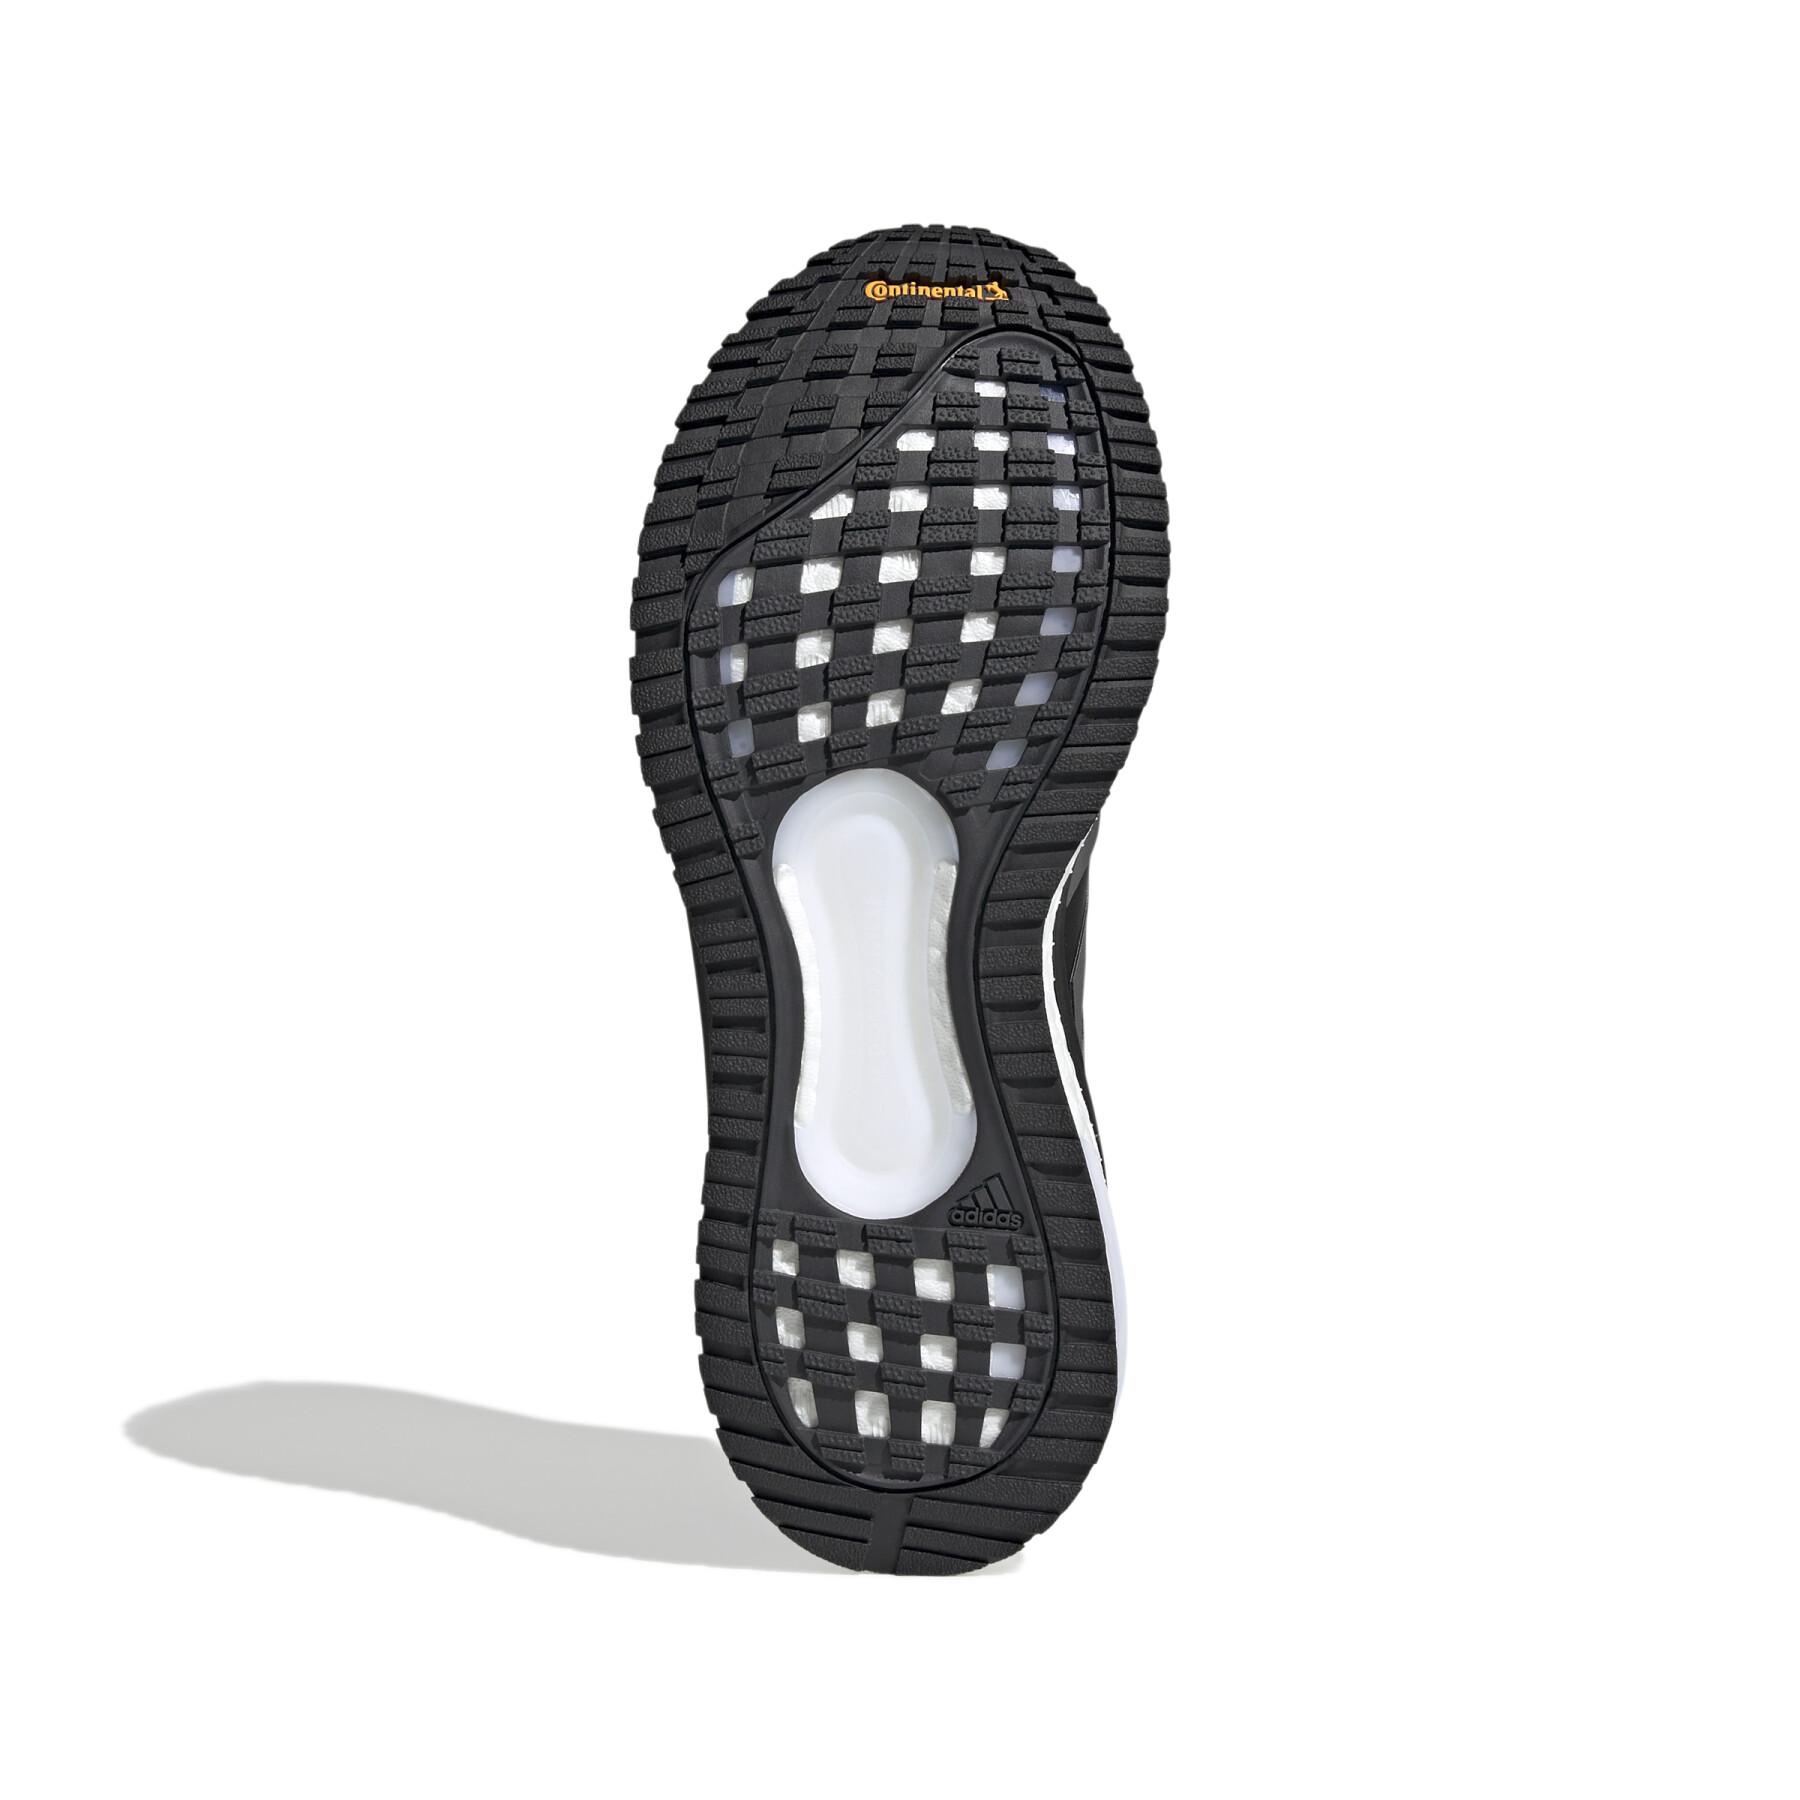 Sapatos adidas SolarGlide 4 GORE-TEX